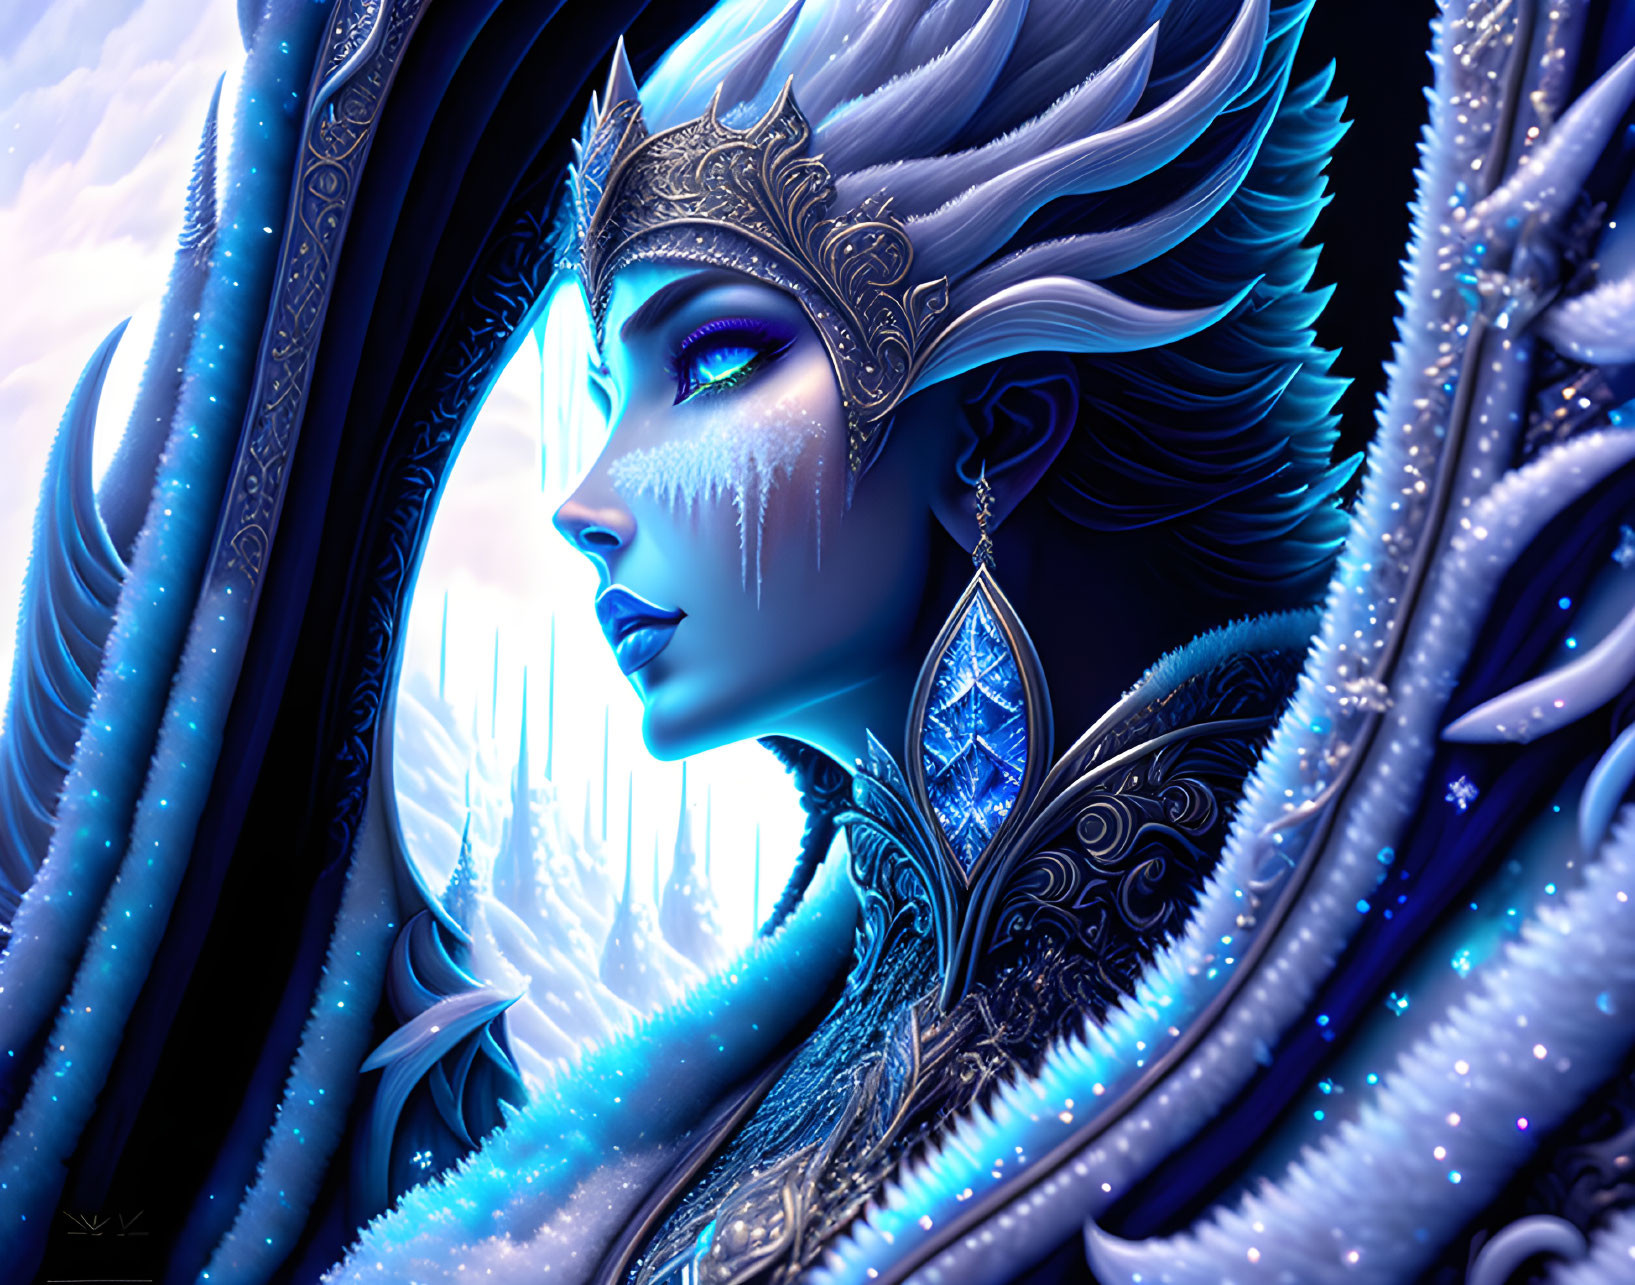 Frozen Queen